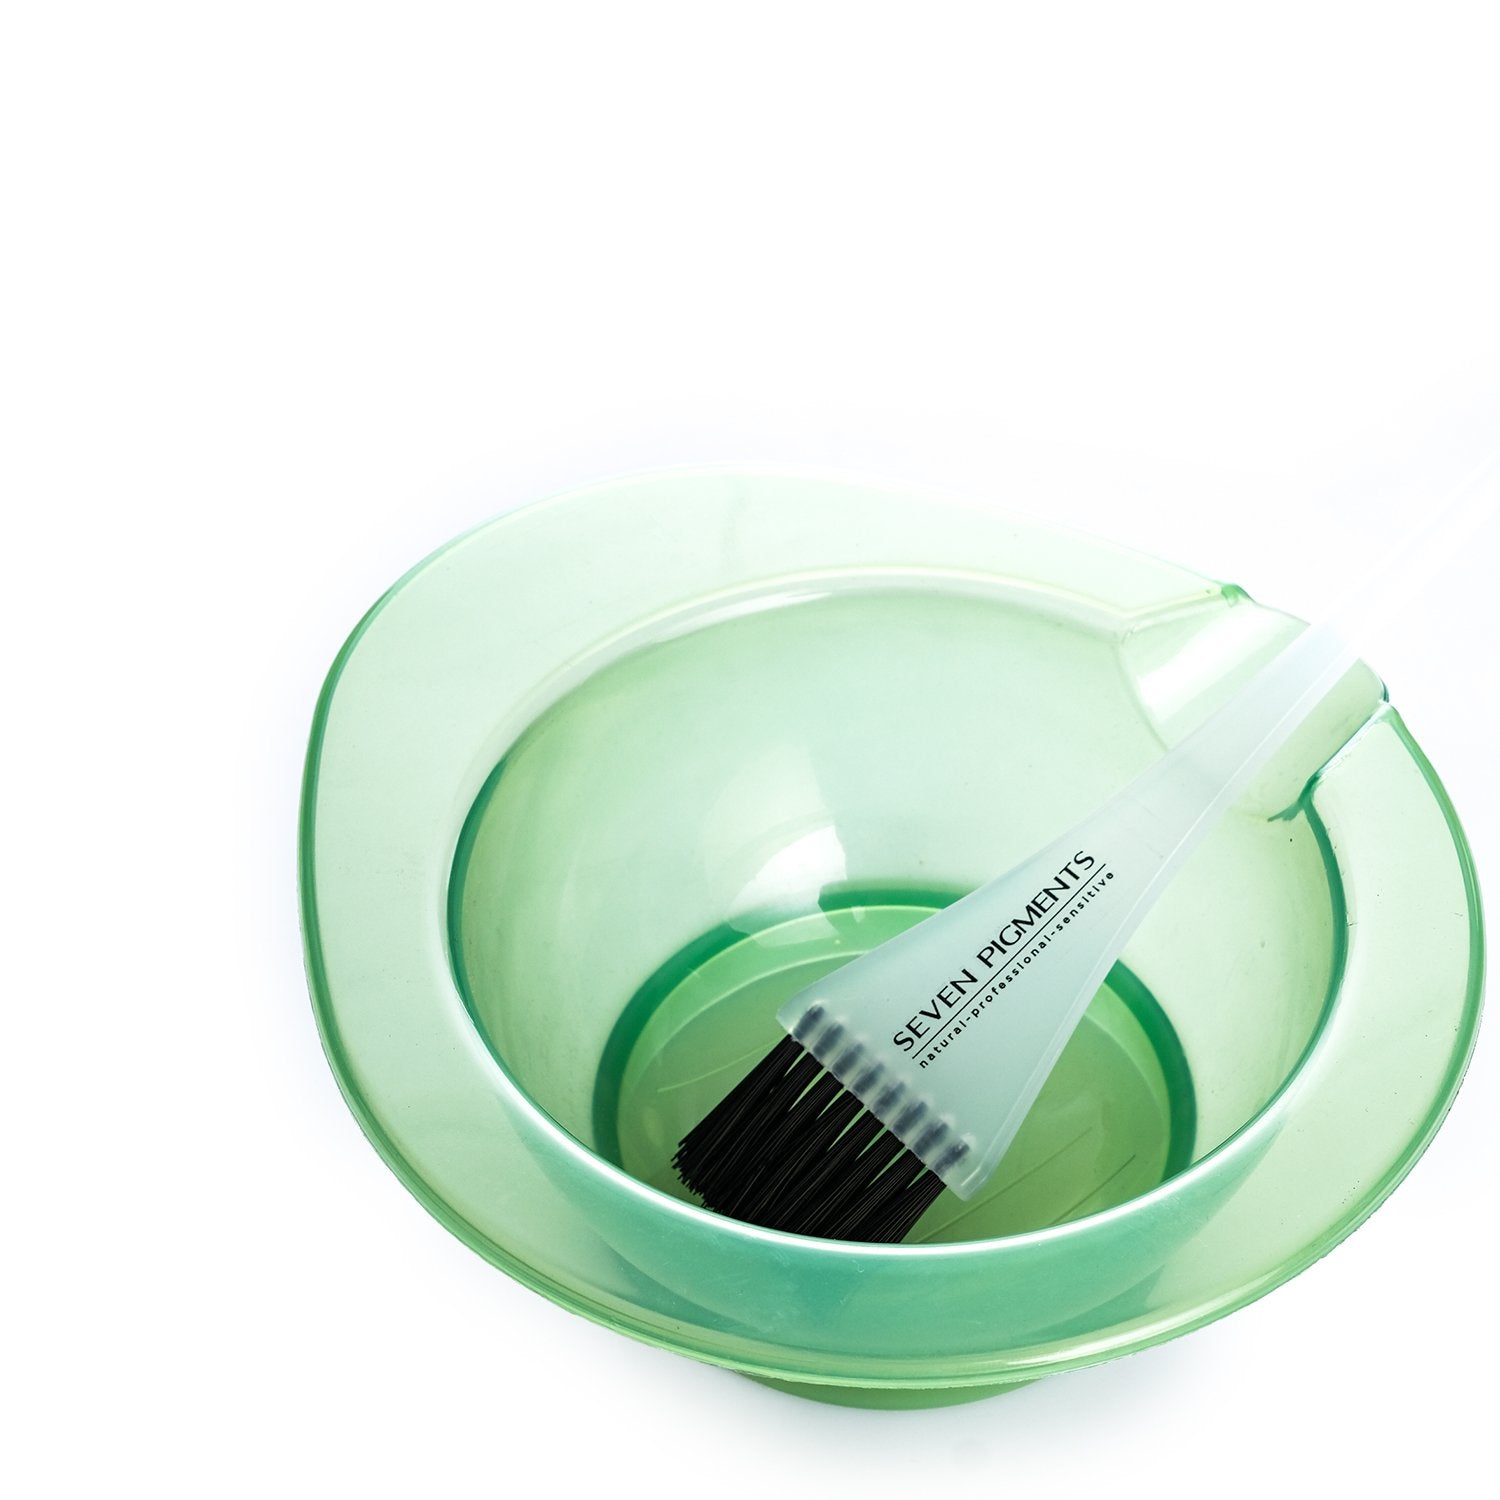 Hair Dye Colouring Bleach Bowl  Brushes Tint Kit Set Hairdressing Salon